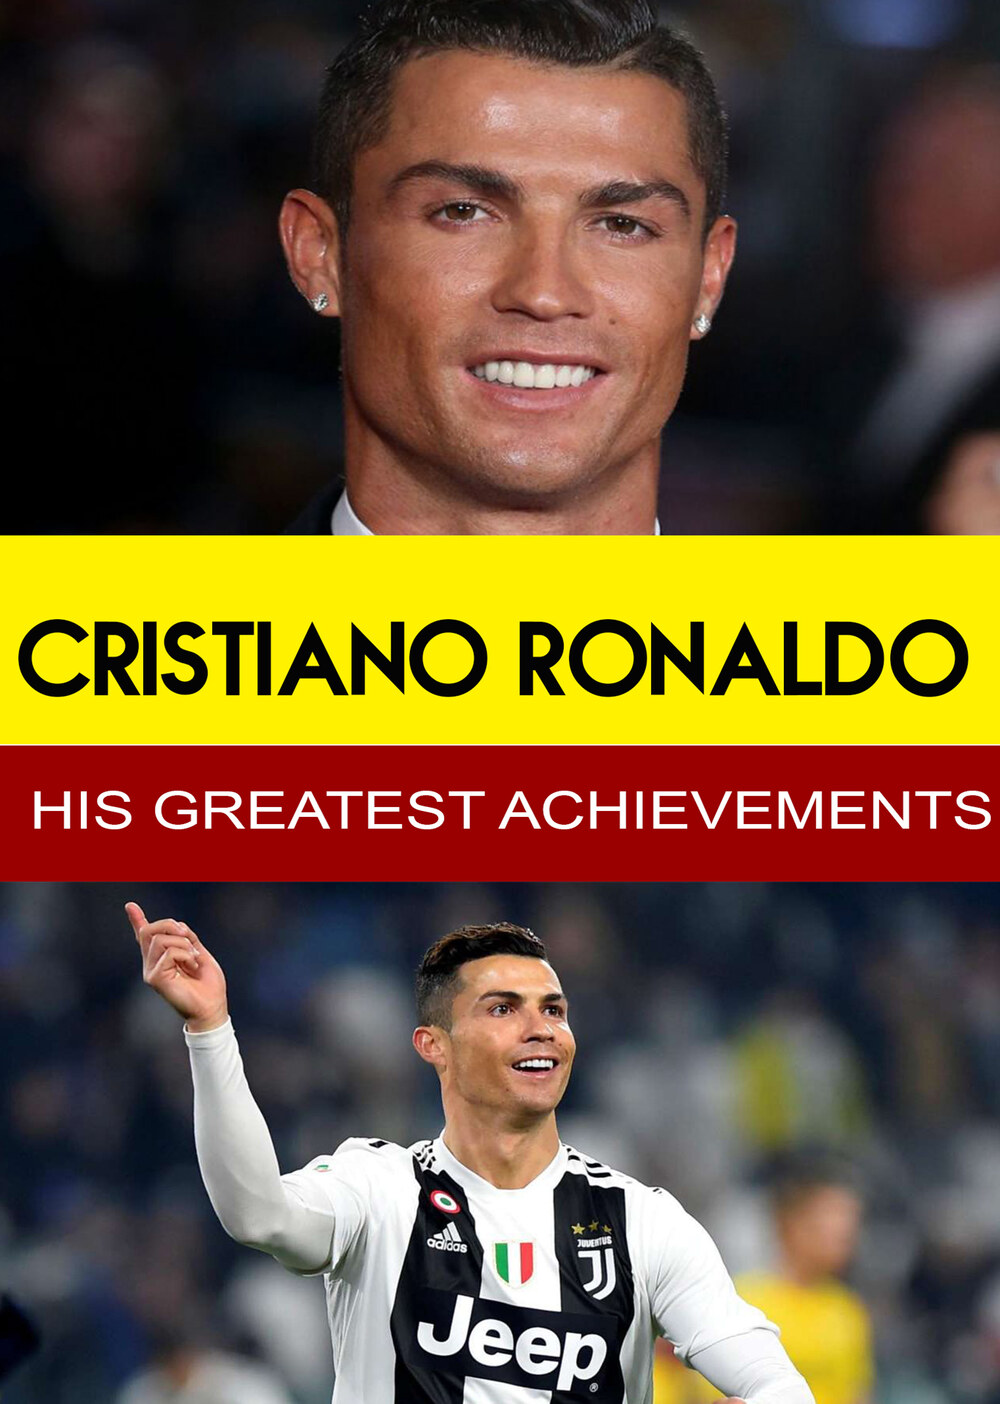 L7859 - Cristiano Ronaldo - His Greatest Achievements